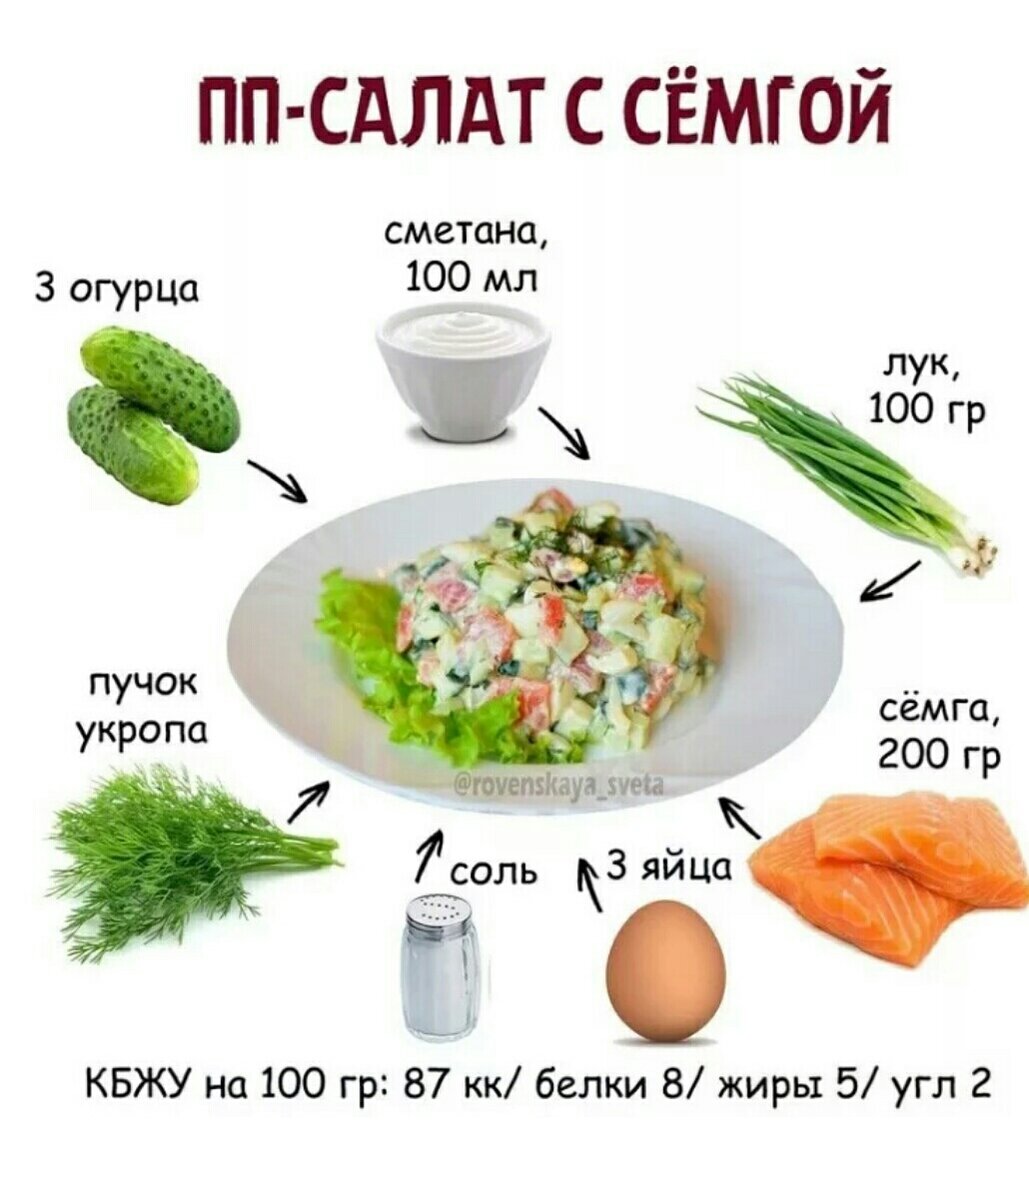 Рецепт вкусного салата для похудения. Салаты на каждый день для похудения. Простые рецепты здорового питания. ПП салаты рецепты. Рецепты салатов ПП на каждый день.